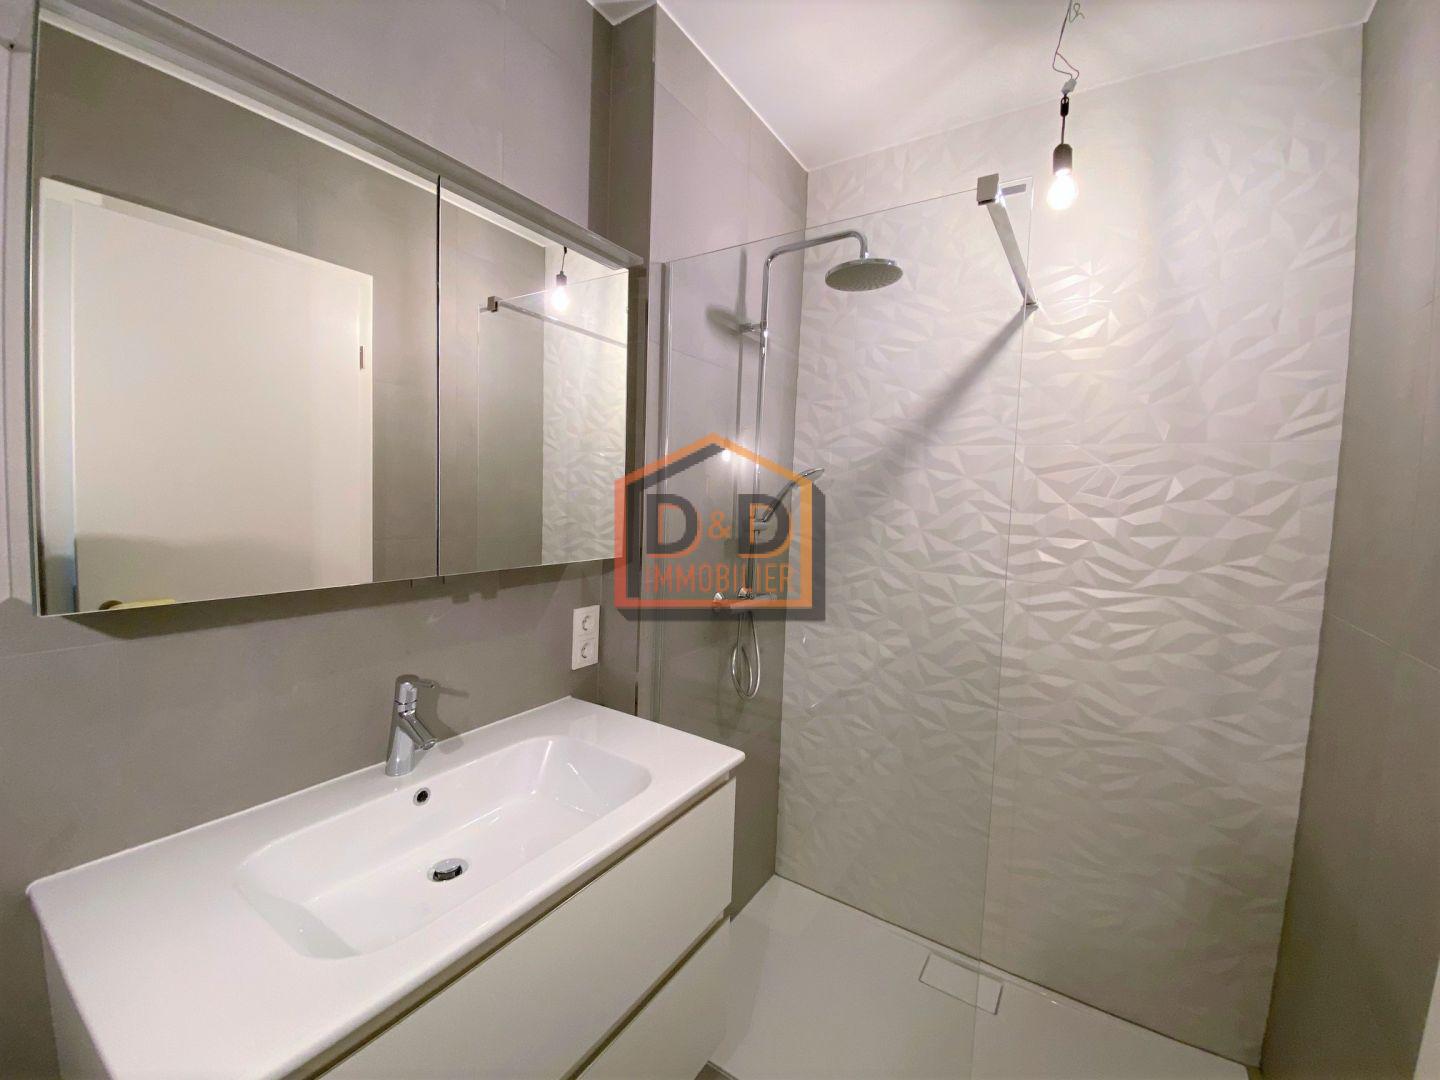 Appartement à Luxembourg-Gasperich, 37 m², 1 salle de bain, 1 500 €/mois